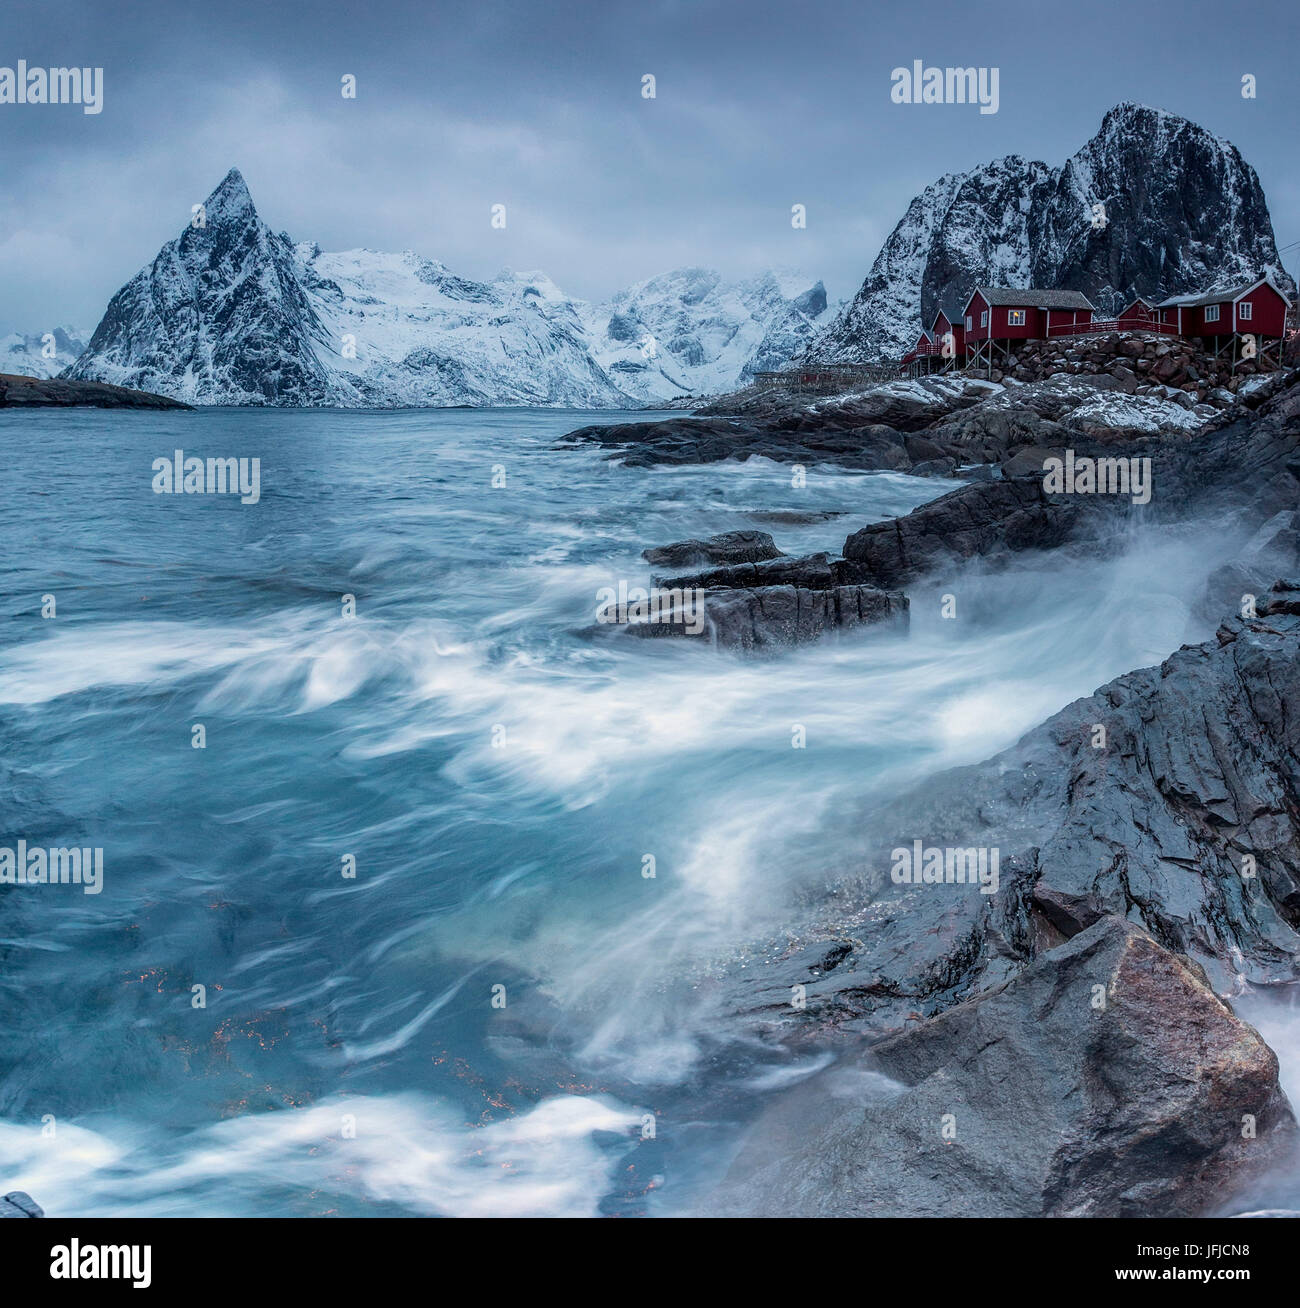 Onde che si infrangono sulle rocce vicino alle case dei pescatori, Hamnøy, Isole Lofoten Norvegia del Nord Europa Foto Stock